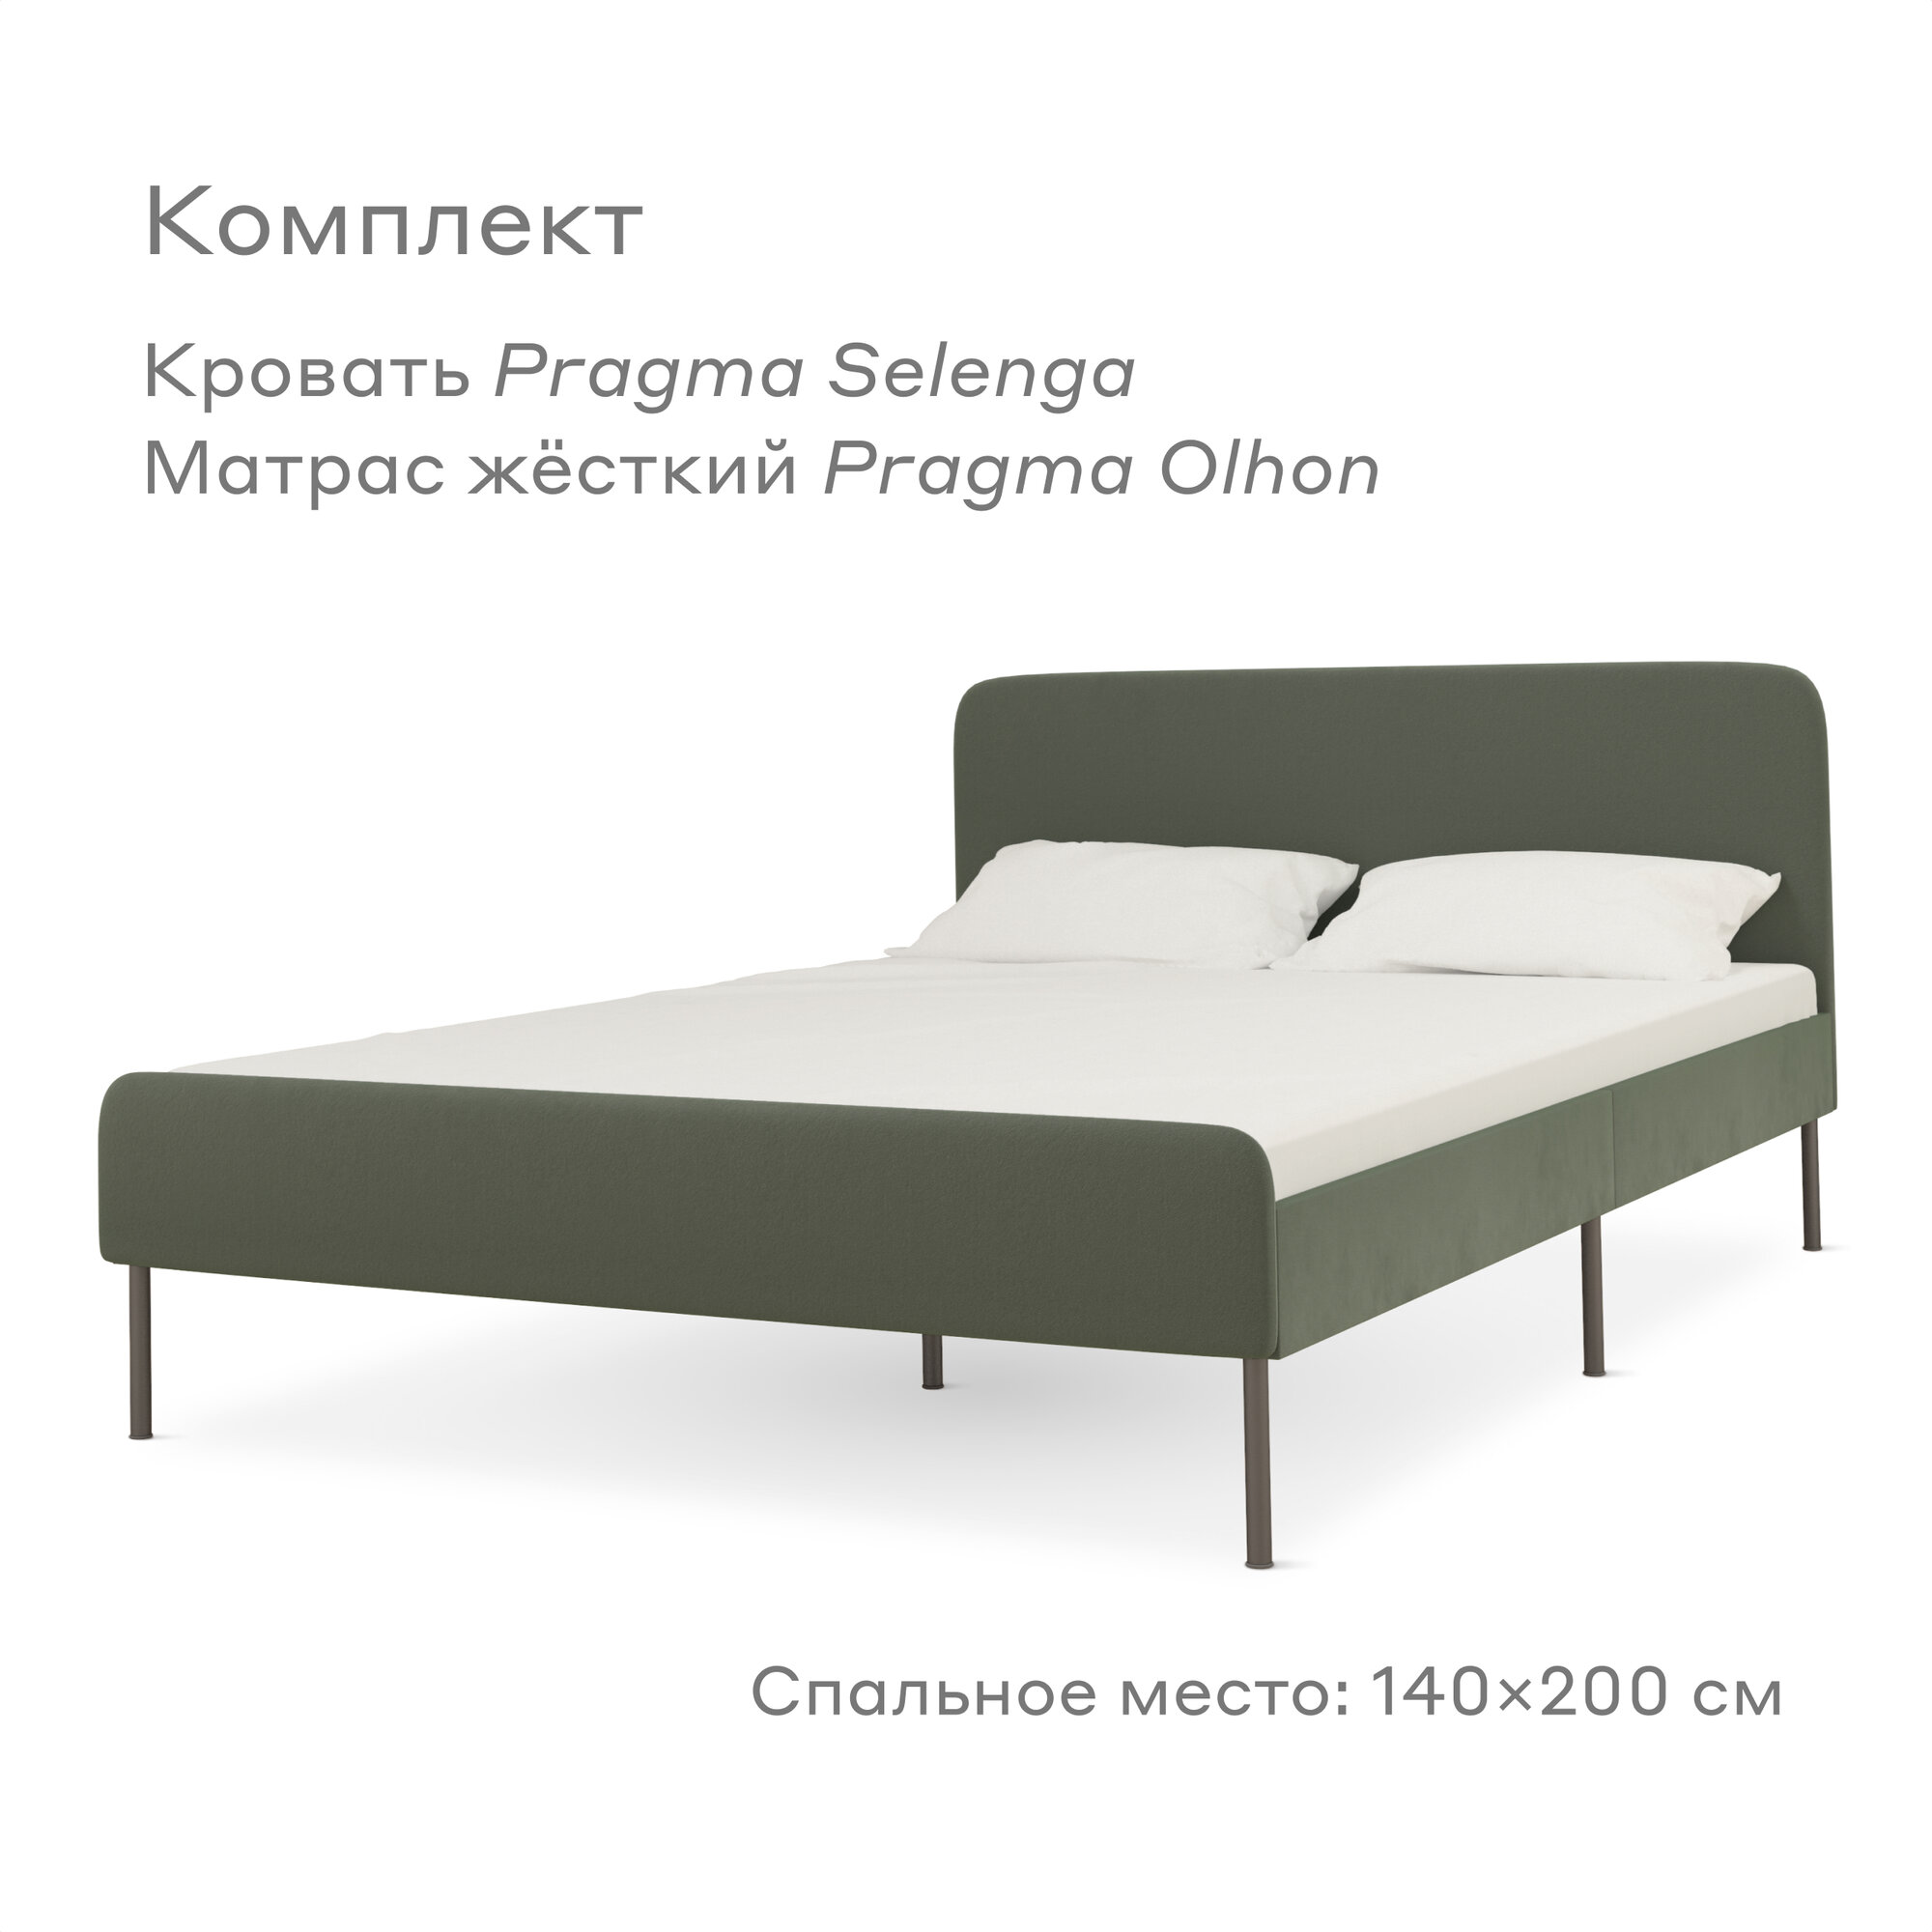 Кровать Pragma Selenga/Olhon с жестким матрасом, размер (ДхШ): 206х144 см, спальное место (ДхШ): 200х140 см, обивка: велюр, с матрасом, цвет: зеленый